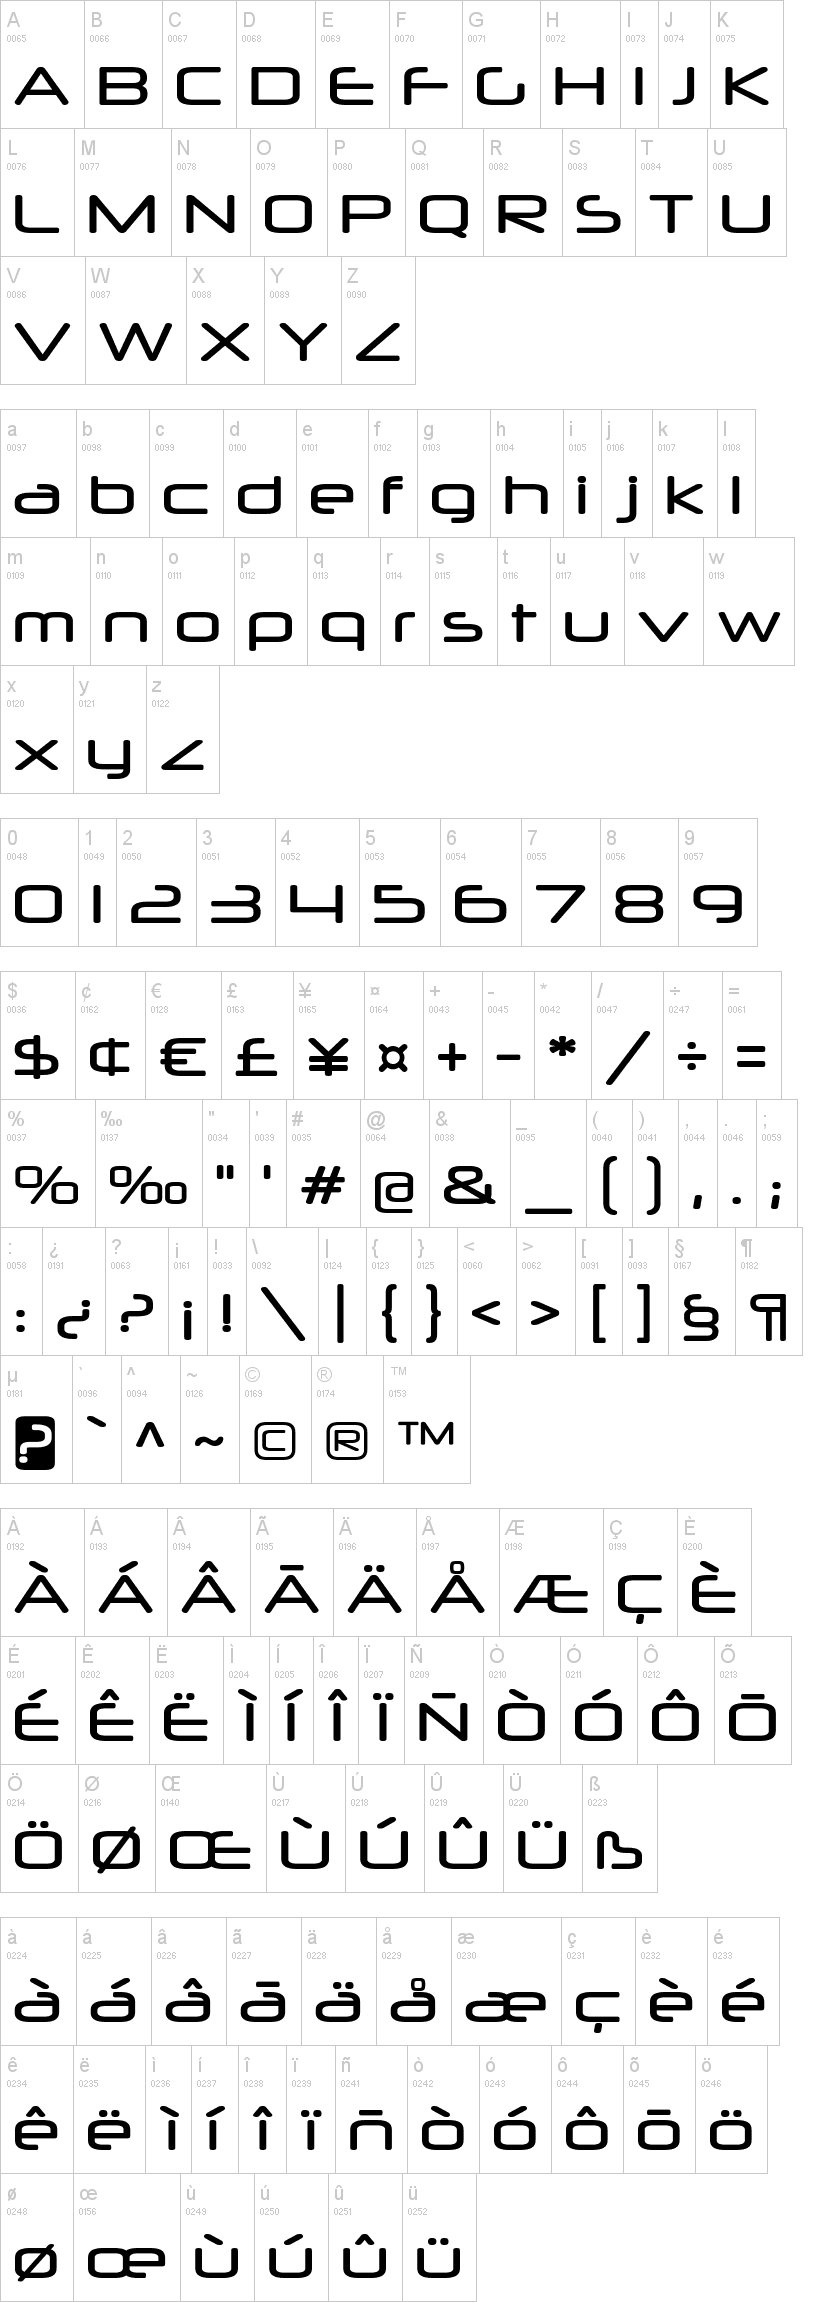 dafont free fonts